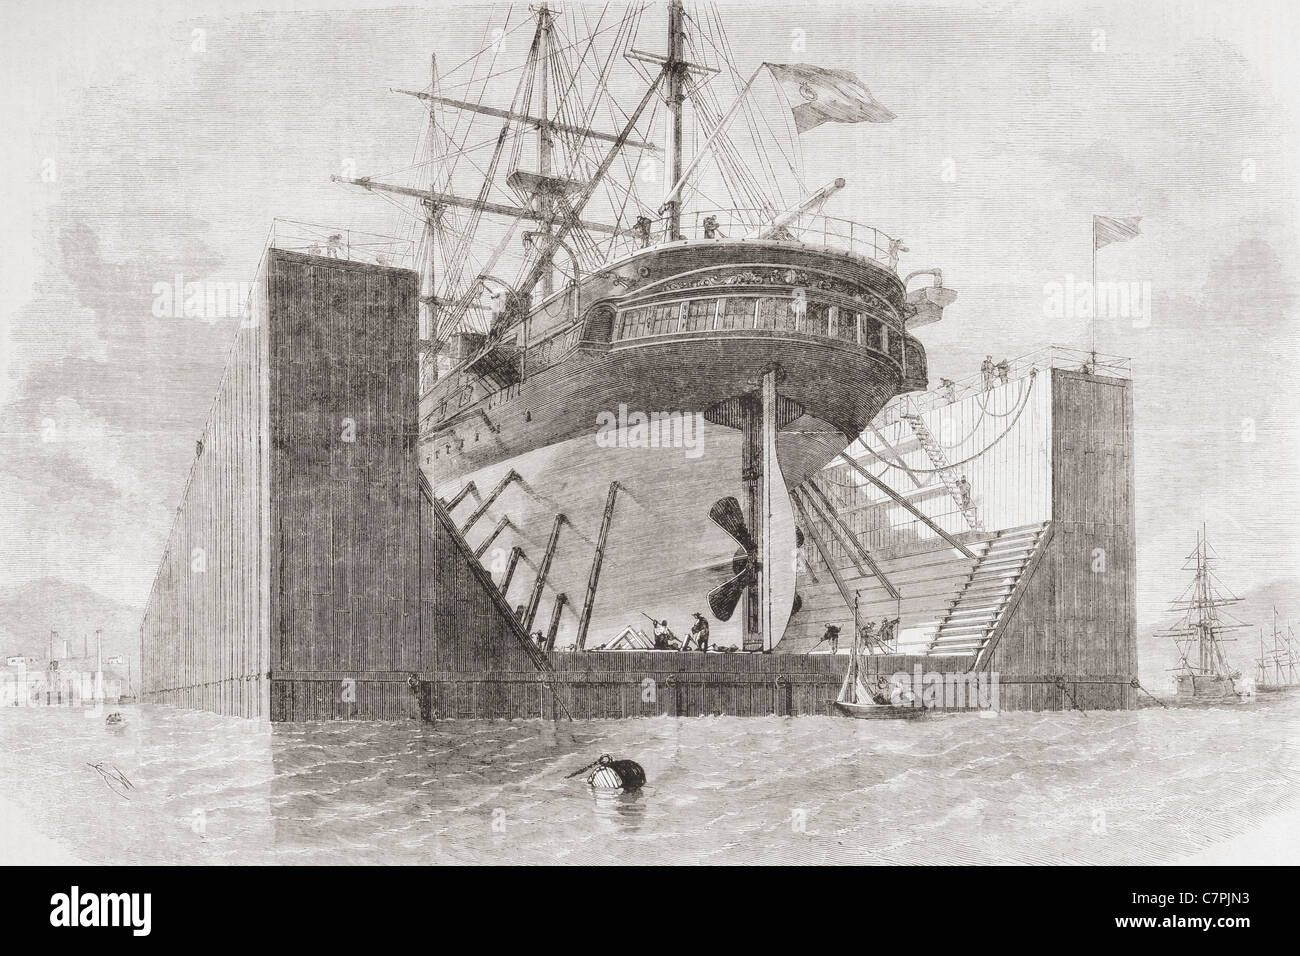 El muelle flotante en Cartagena, Murcia, España a mediados del siglo XIX. Foto de stock